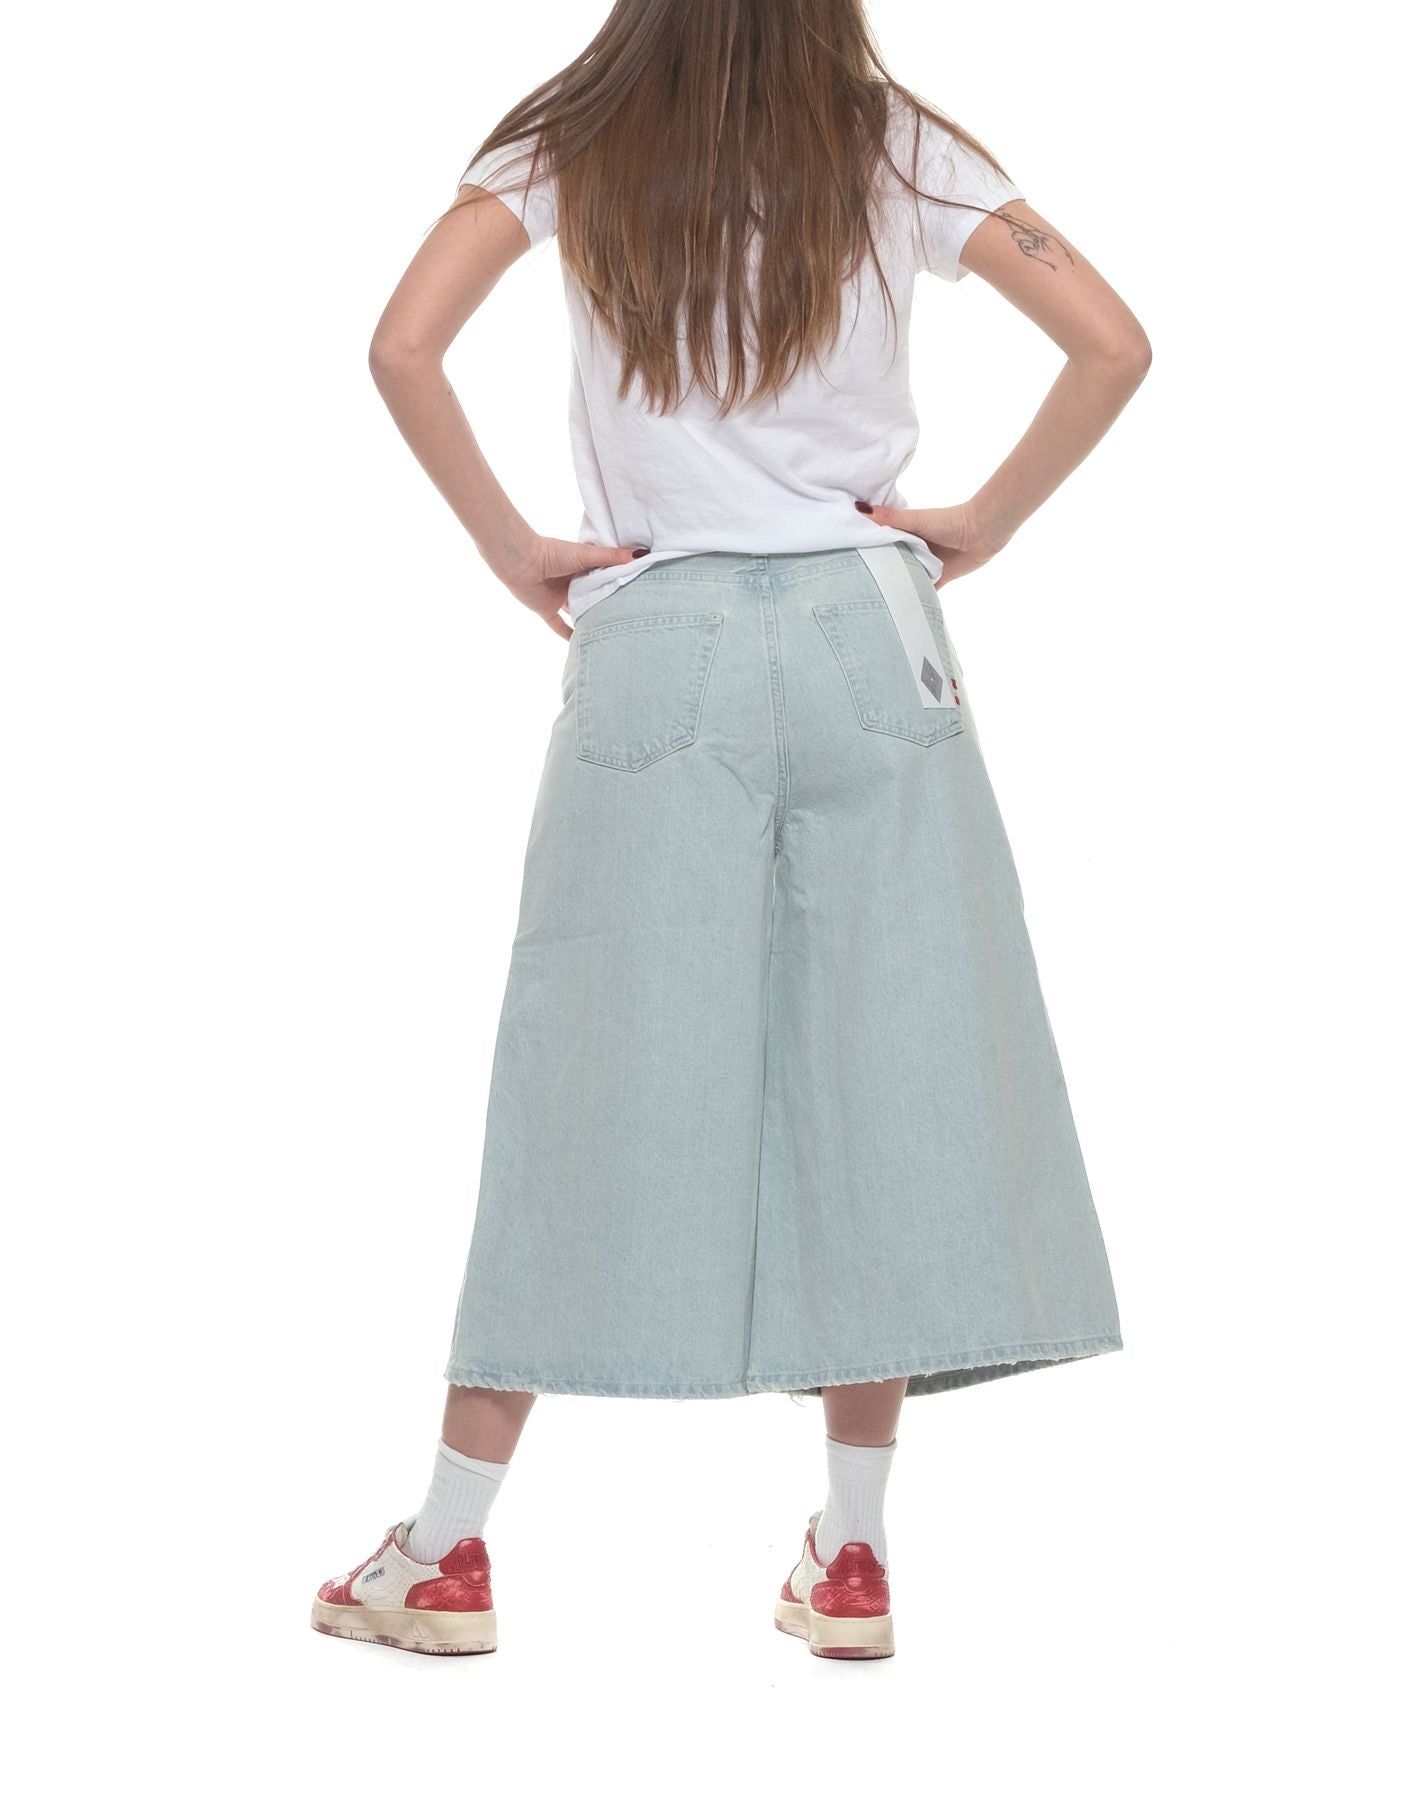 Shorts Woman AMD050D4692495 Rockstar Amish